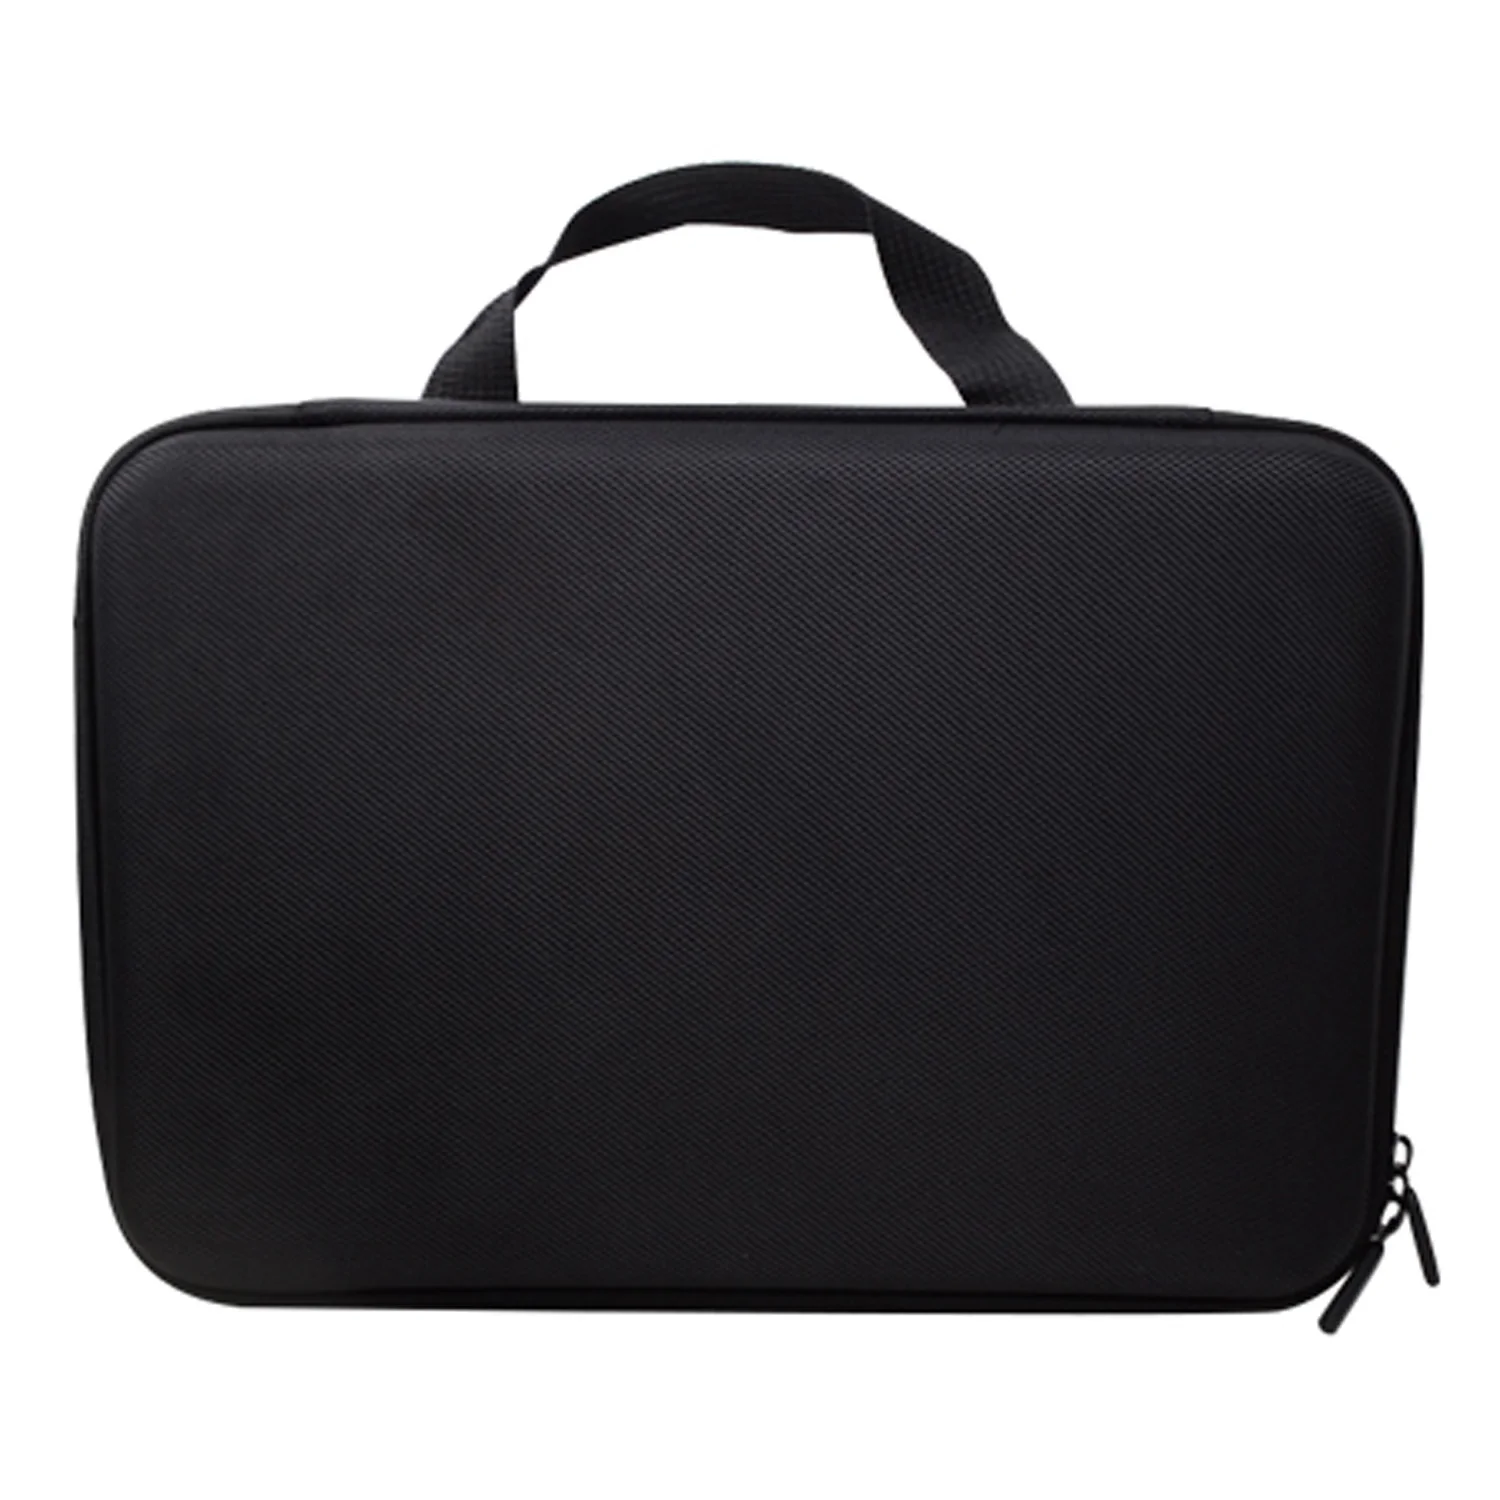 Gosear 32x22 см Портативный водостойкий износостойкий сумка для переноски сумка для GoPro Hero 7 6 5 4 3 3 действие Камера аксессуары